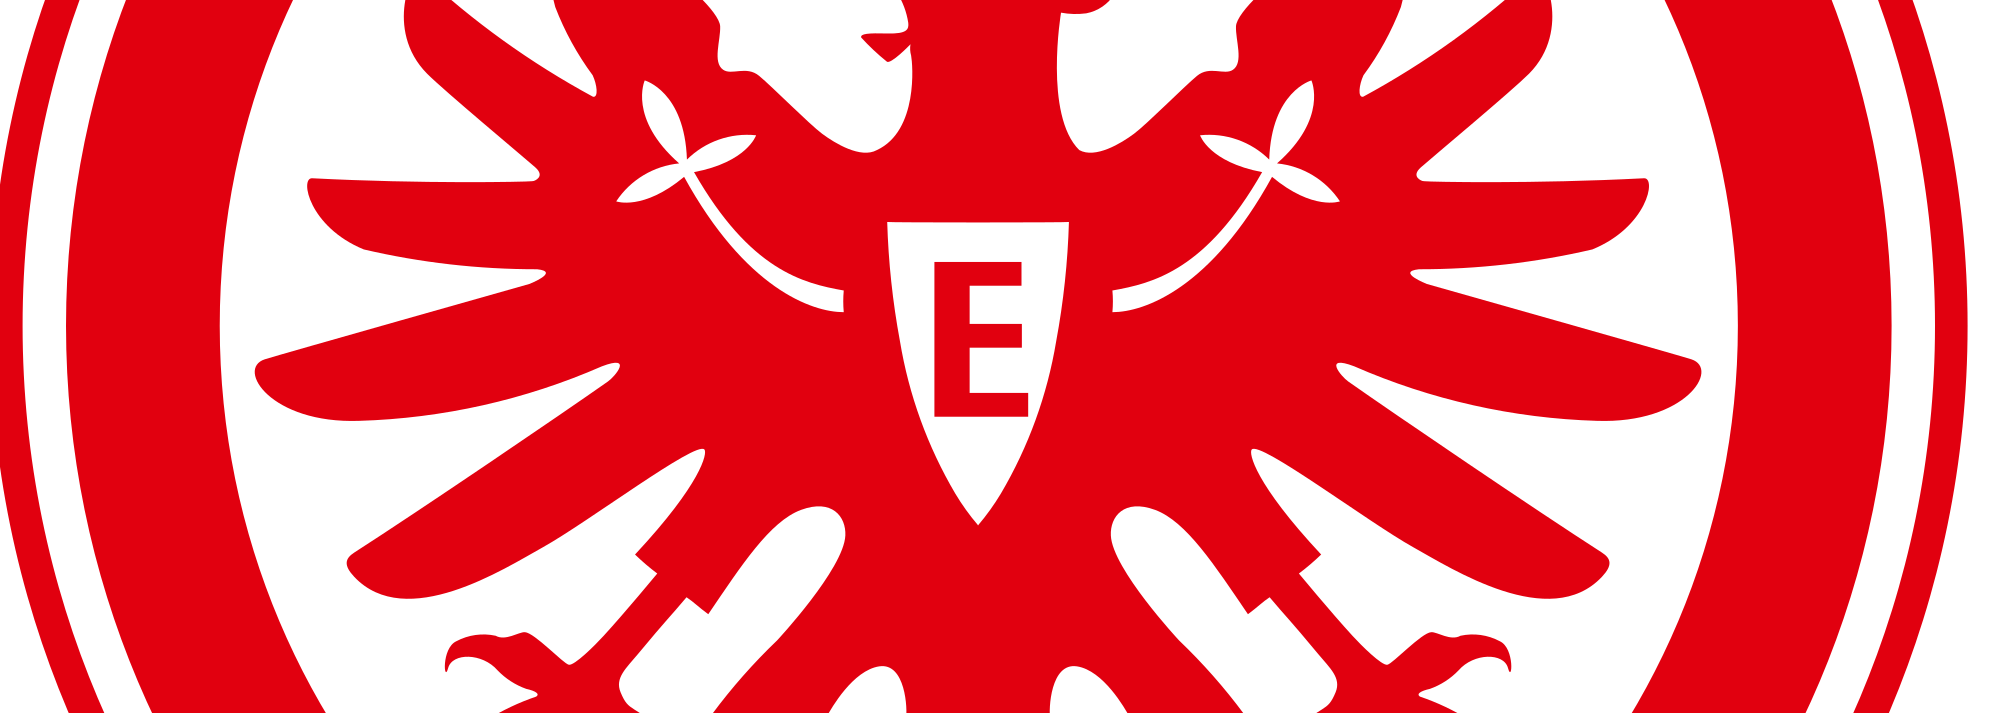 Eintracht Frankfurt Live Stream kostenlos und legal anschauen